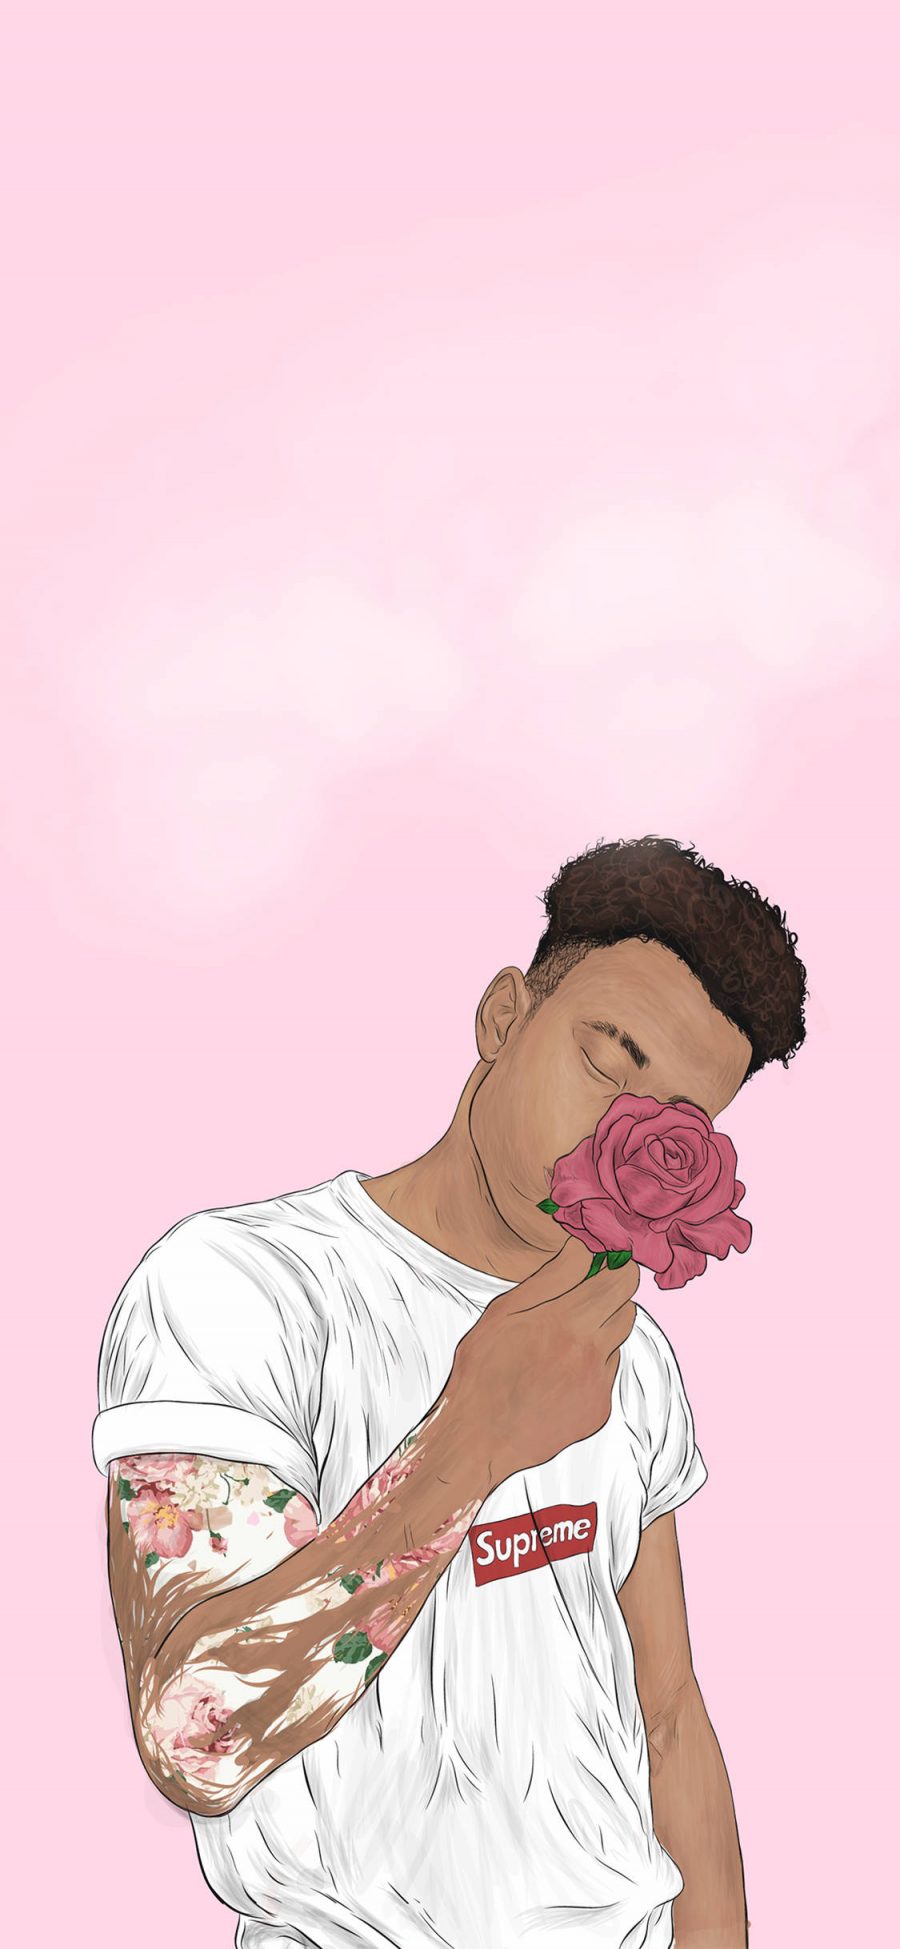 [2436×1125]潮图 黑人男孩 插画 粉色系 苹果手机动漫壁纸图片